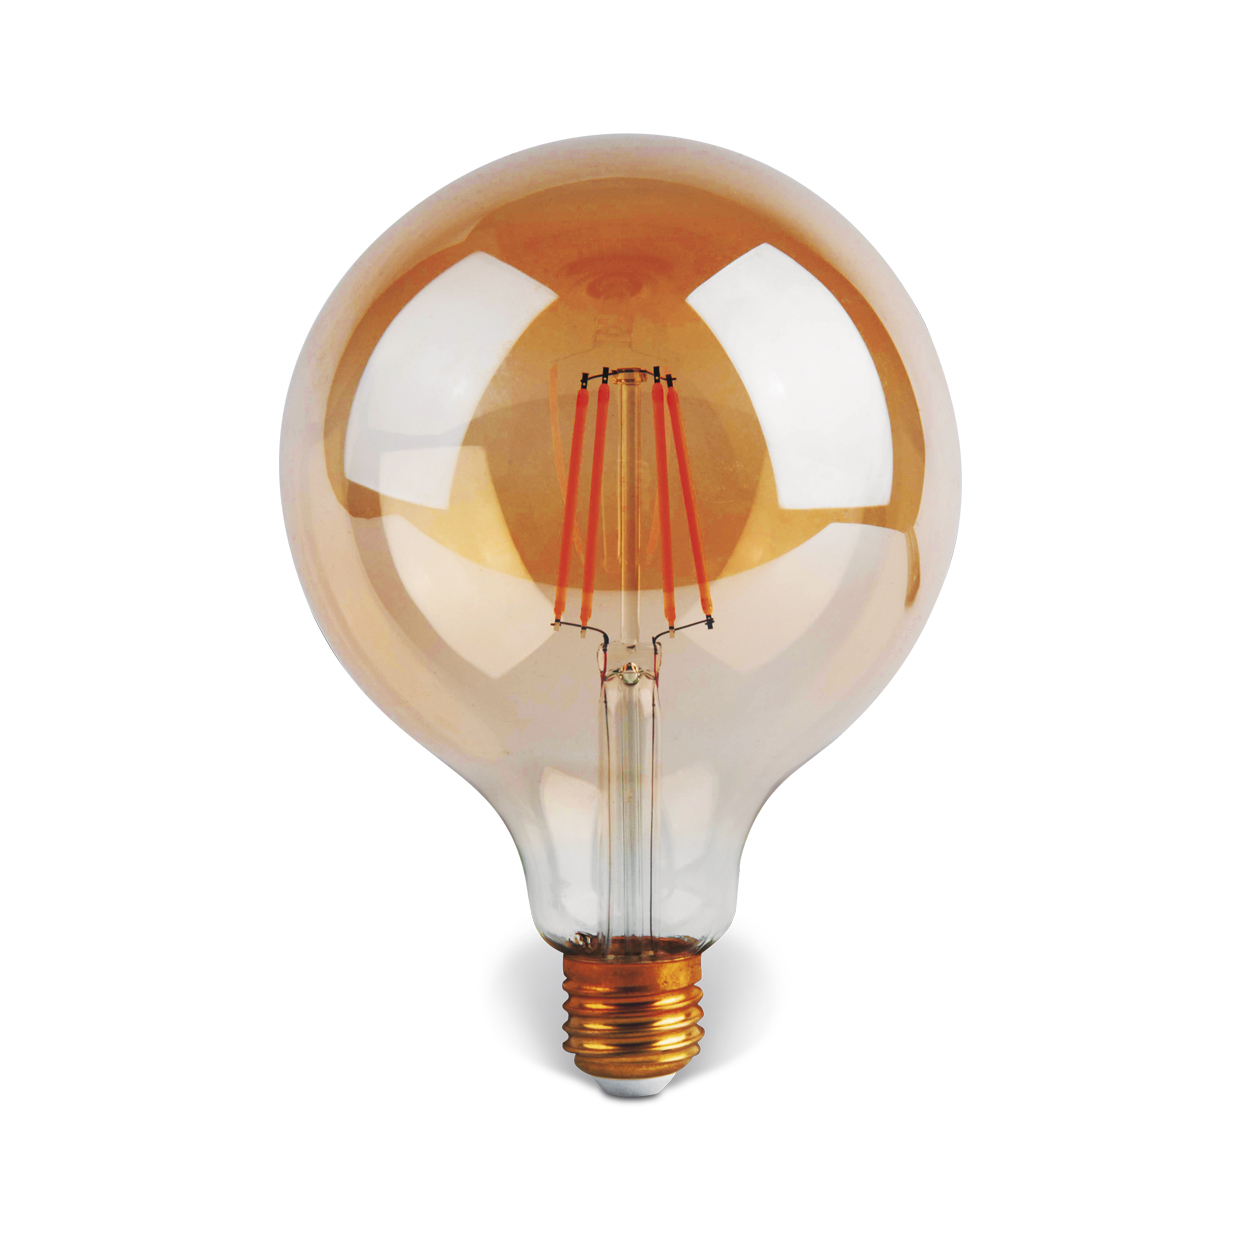 Nuevo artículo en linea: la bombilla de filamento G45 E14 - Ecoluz LED